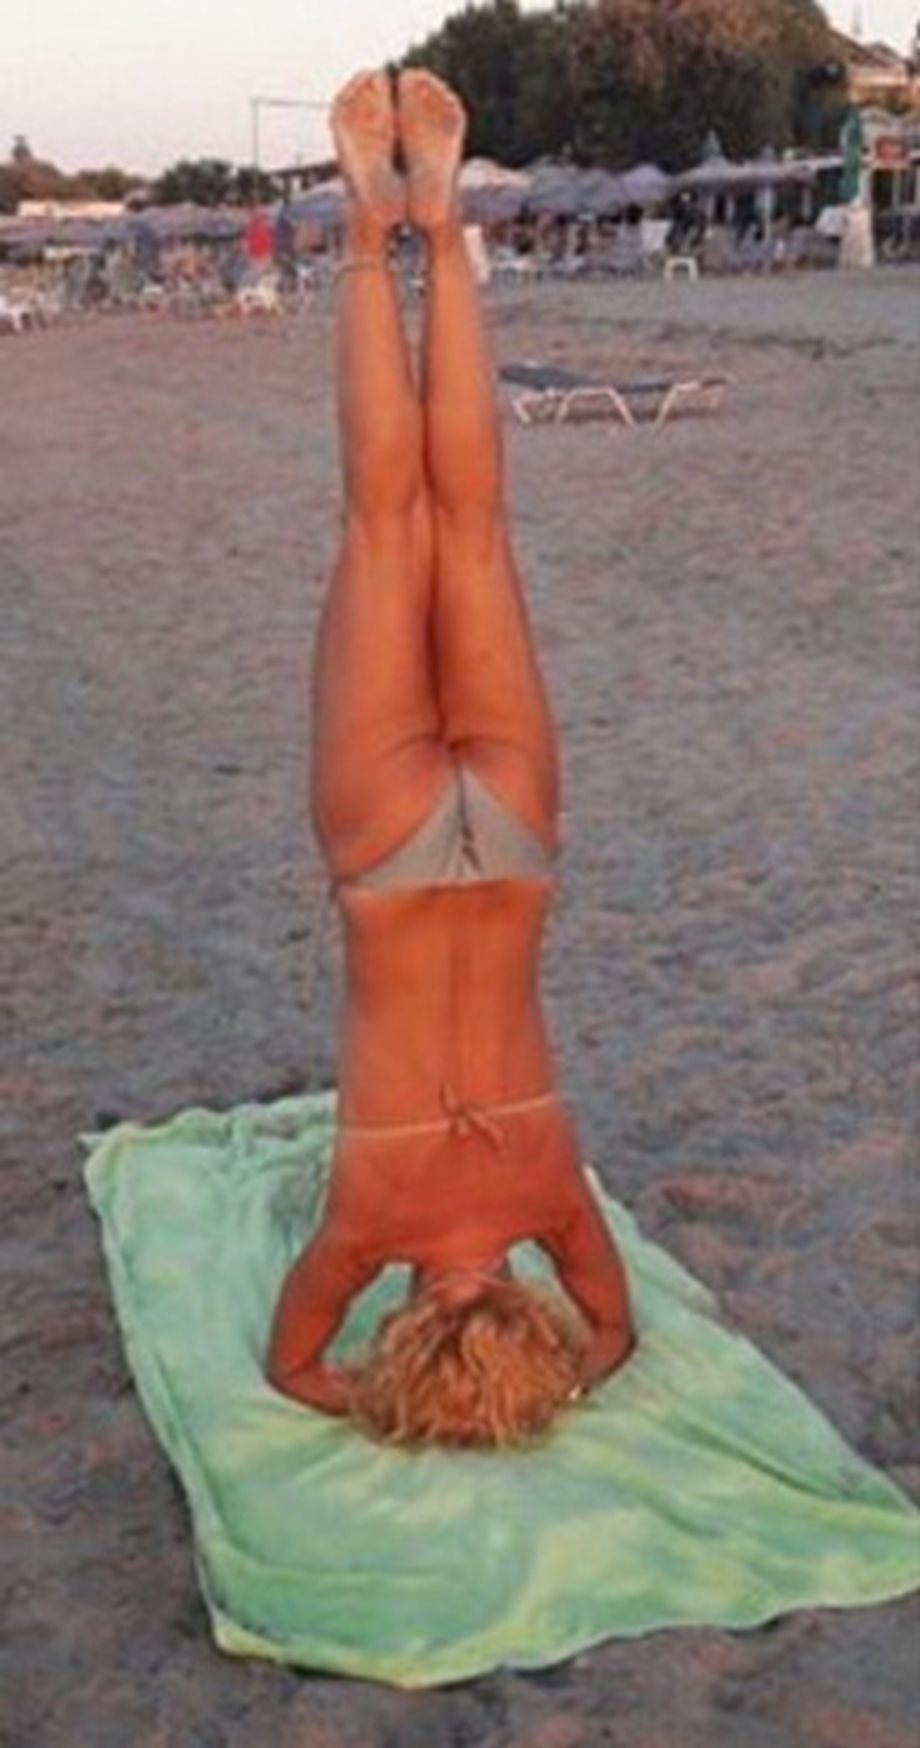 H πασίγνωστη Ελληνίδα ηθοποιός κάνει γιόγκα στην παραλία!